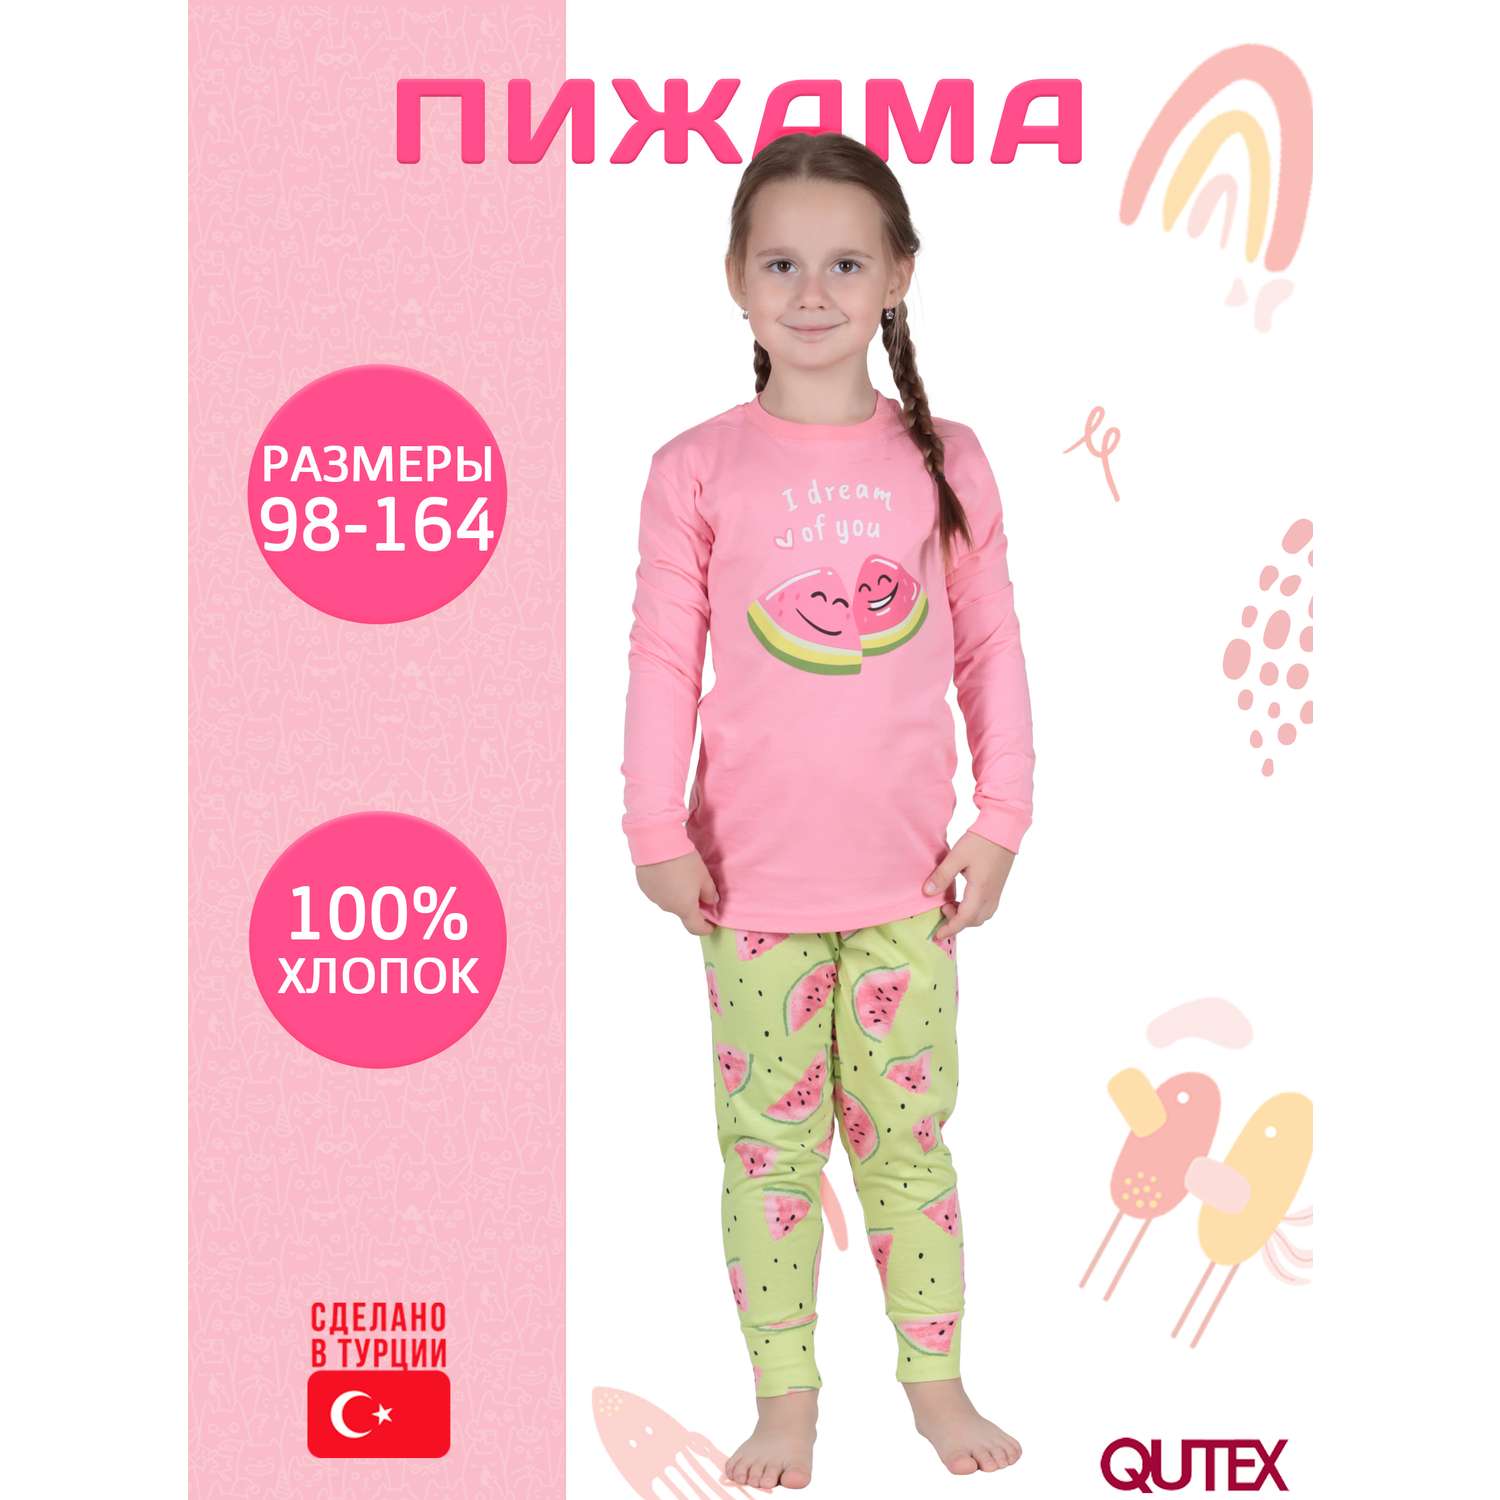 Пижама QUTEX 2301-001-1Q104 - фото 2